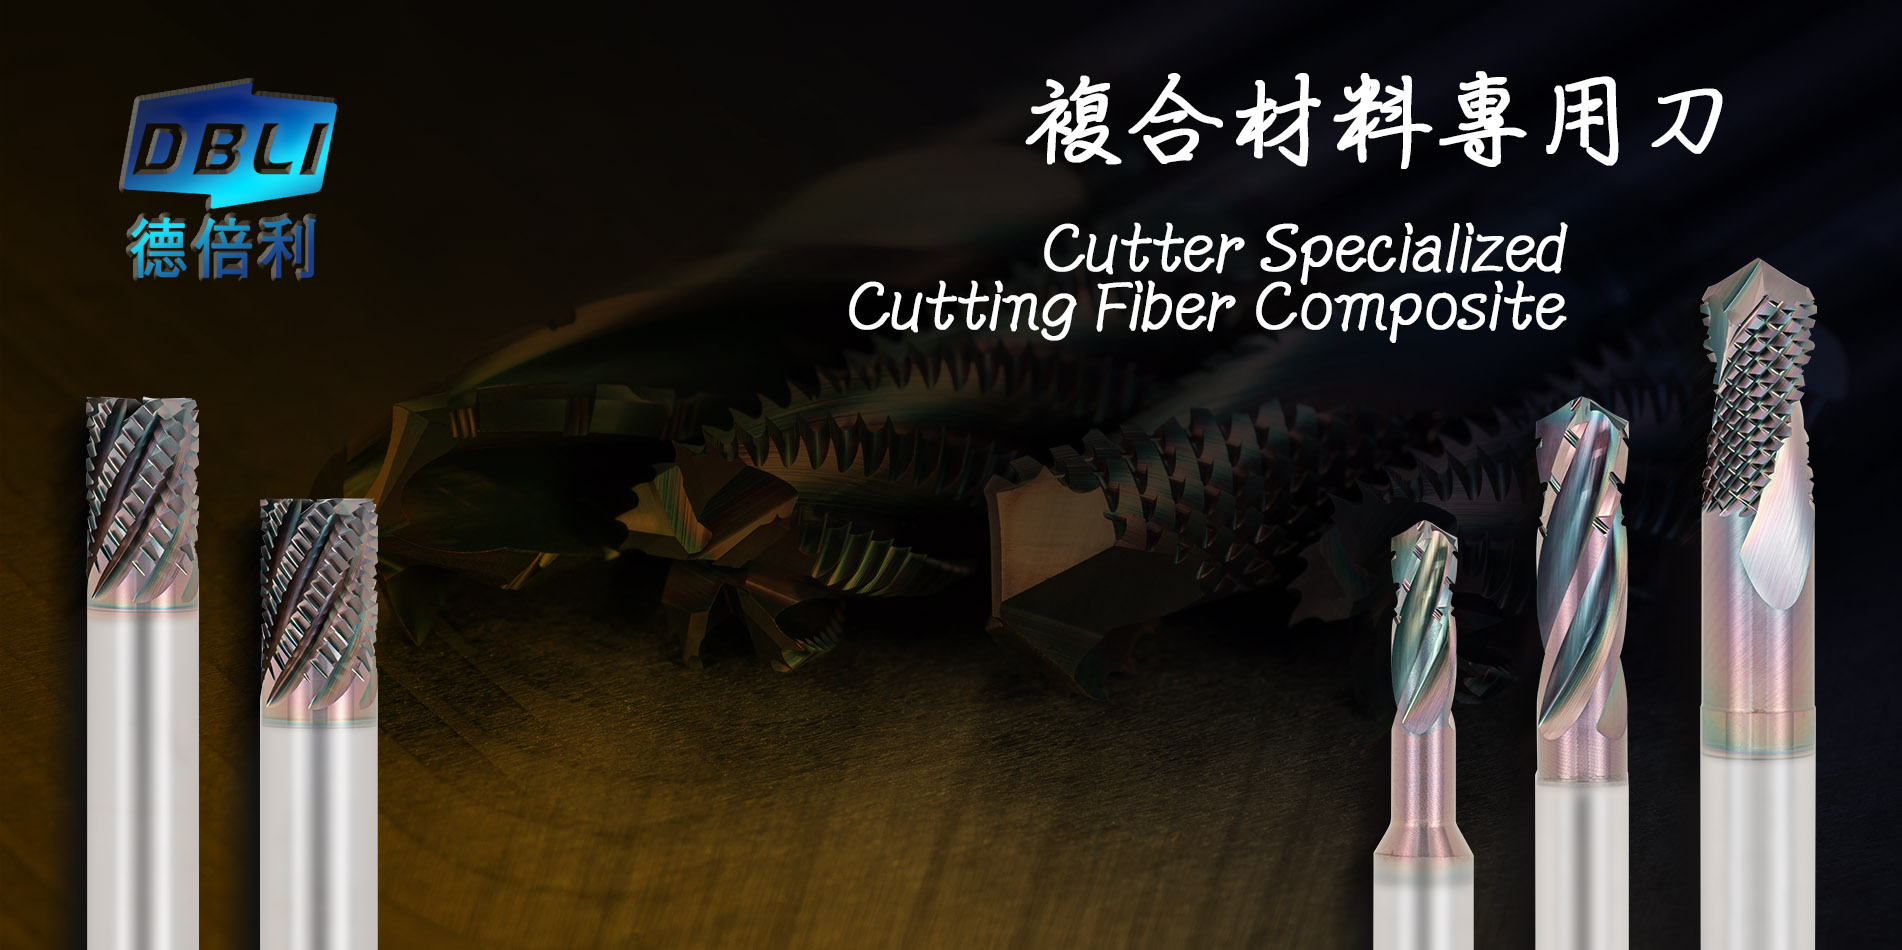 Cutter Specialized Cutting Fiber Composite